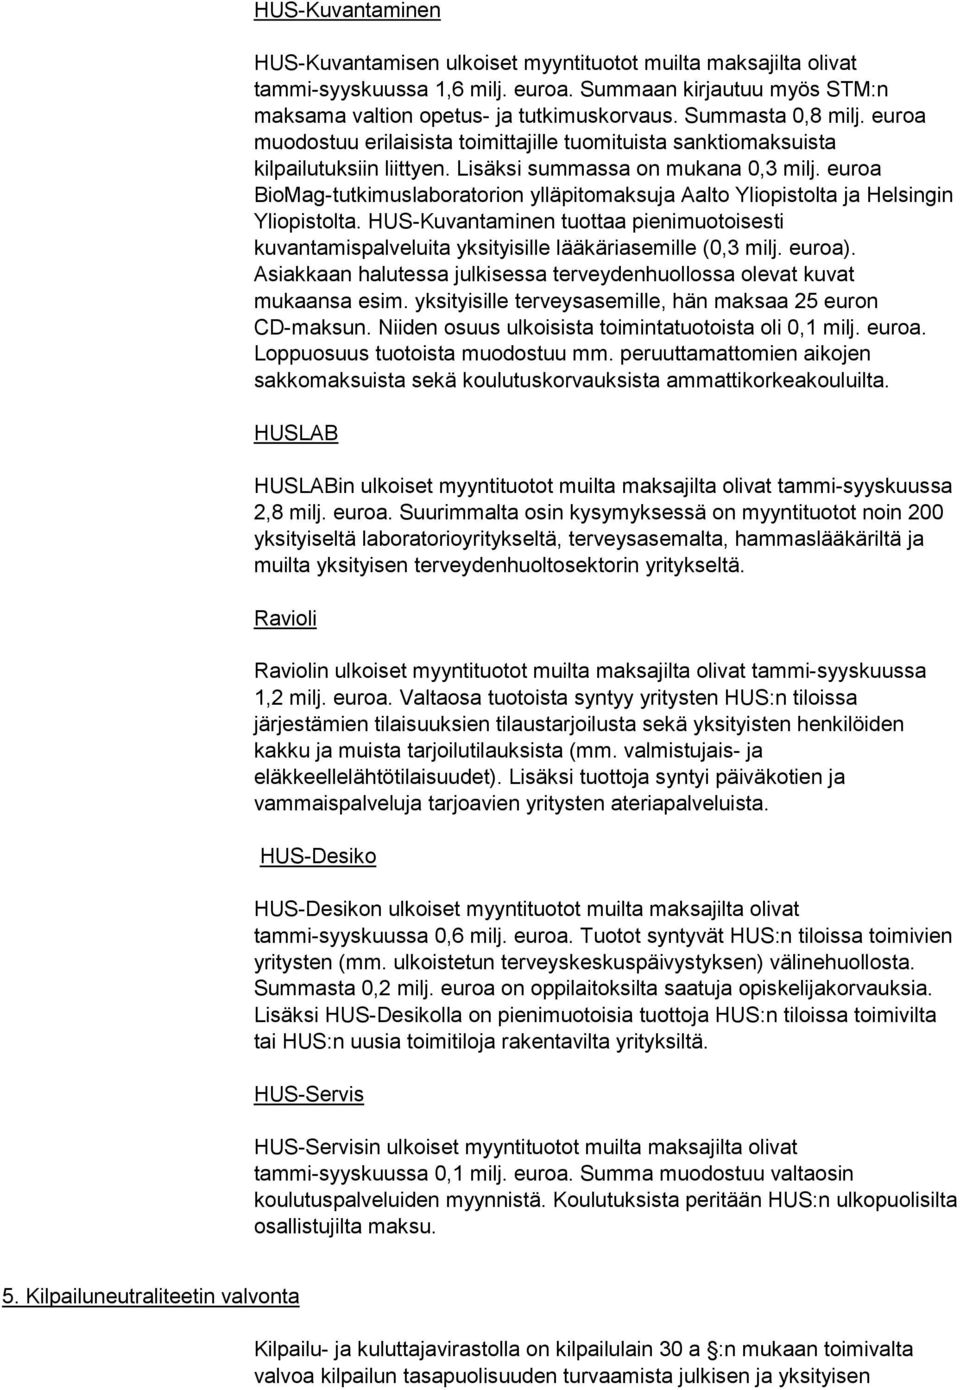 euroa BioMag-tutkimuslaboratorion ylläpitomaksuja Aalto Yliopistolta ja Helsingin Yliopistolta. HUS-Kuvantaminen tuottaa pienimuotoisesti kuvantamispalveluita yksityisille lääkäriasemille (0,3 milj.